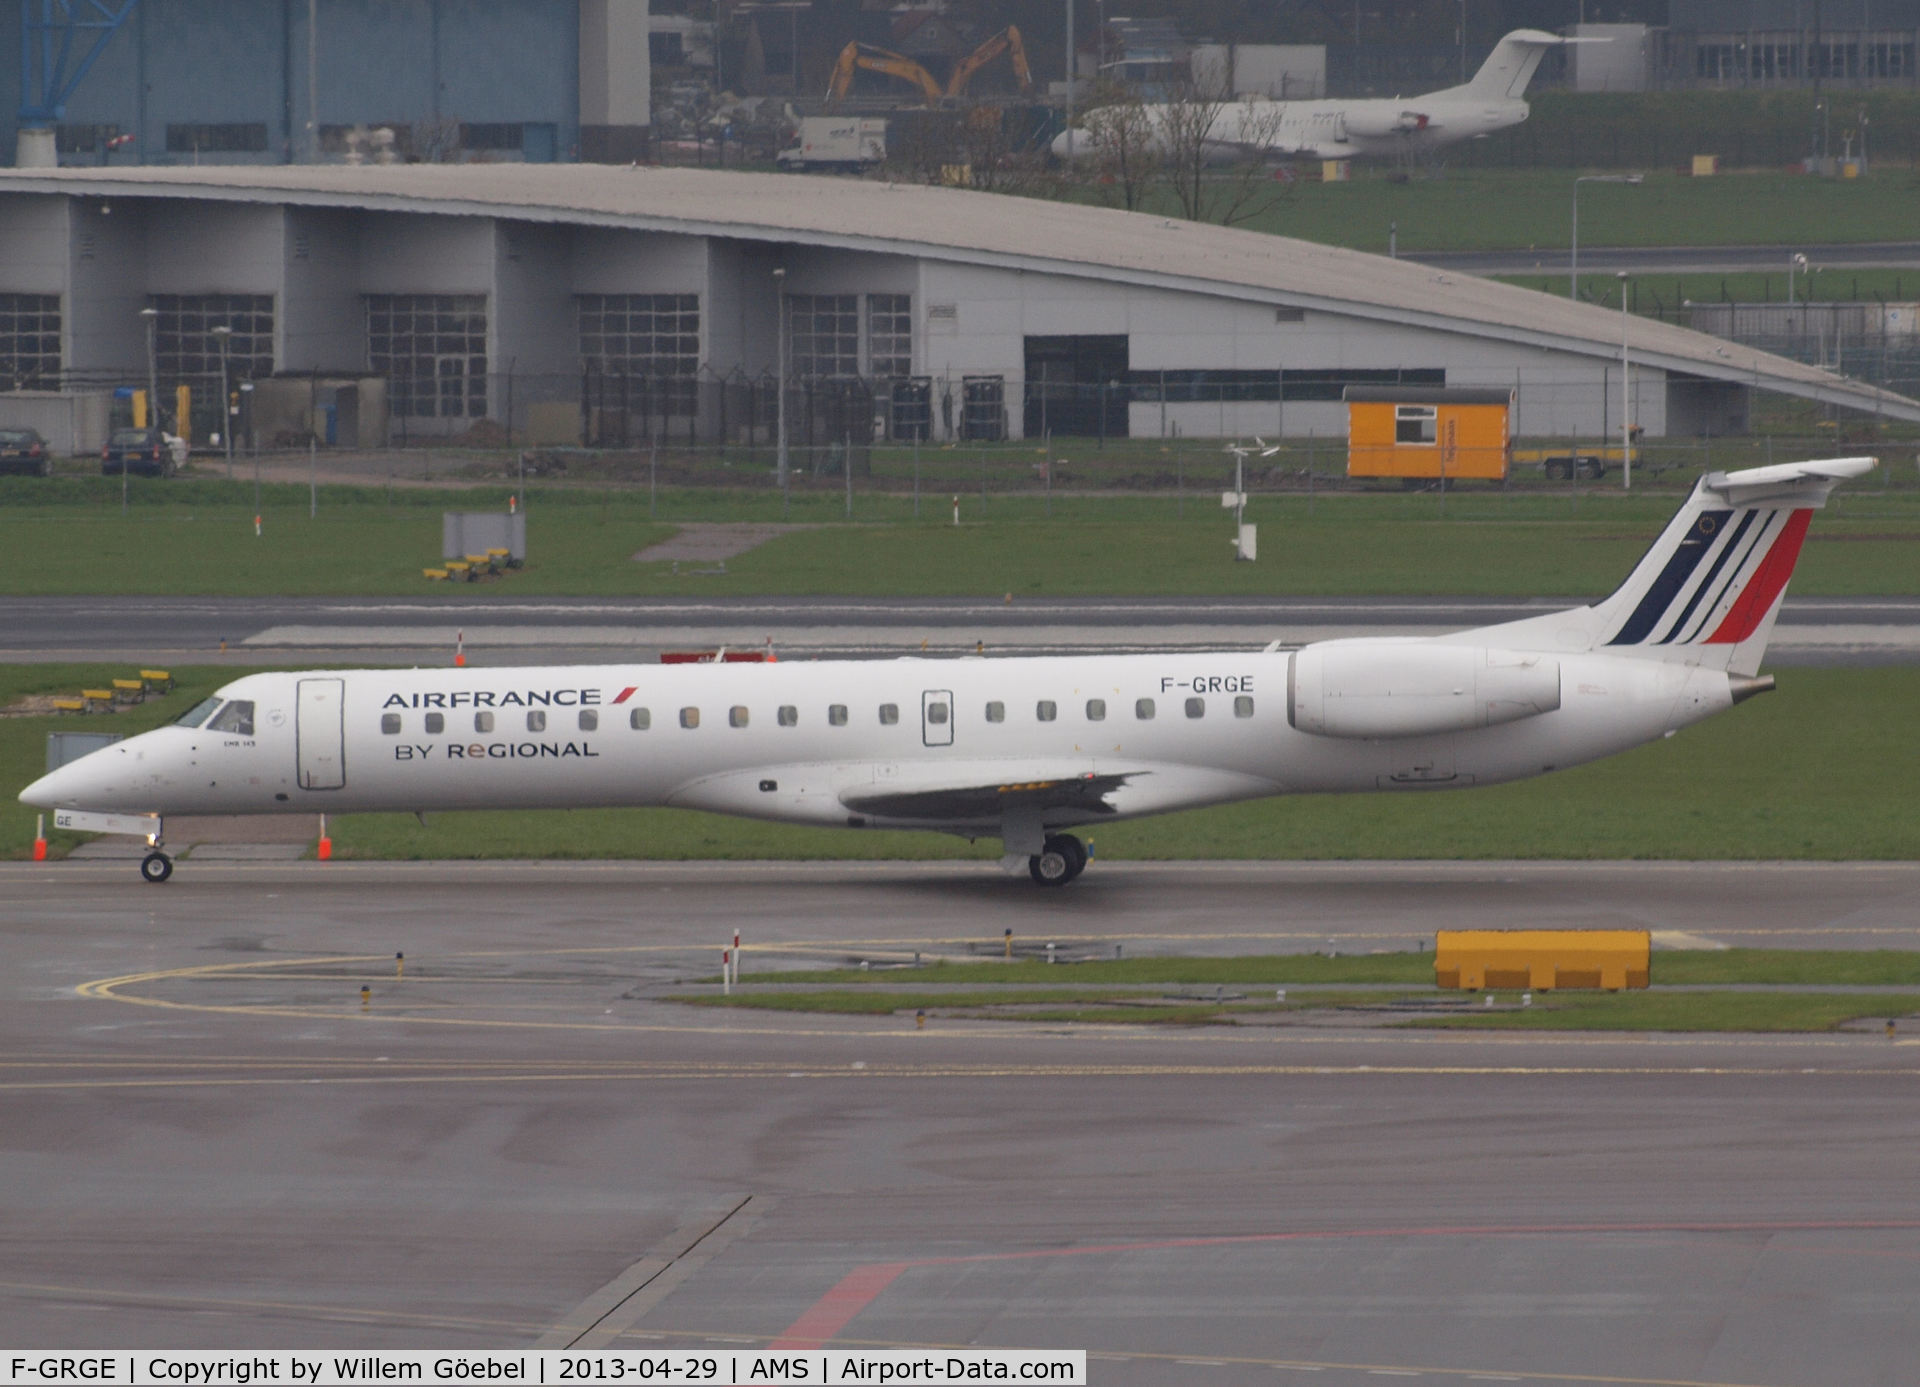 F-GRGE, 1998 Embraer EMB-145EU (ERJ-145EU) C/N 145047, Taxi to runway L18 of Schiphol Airport